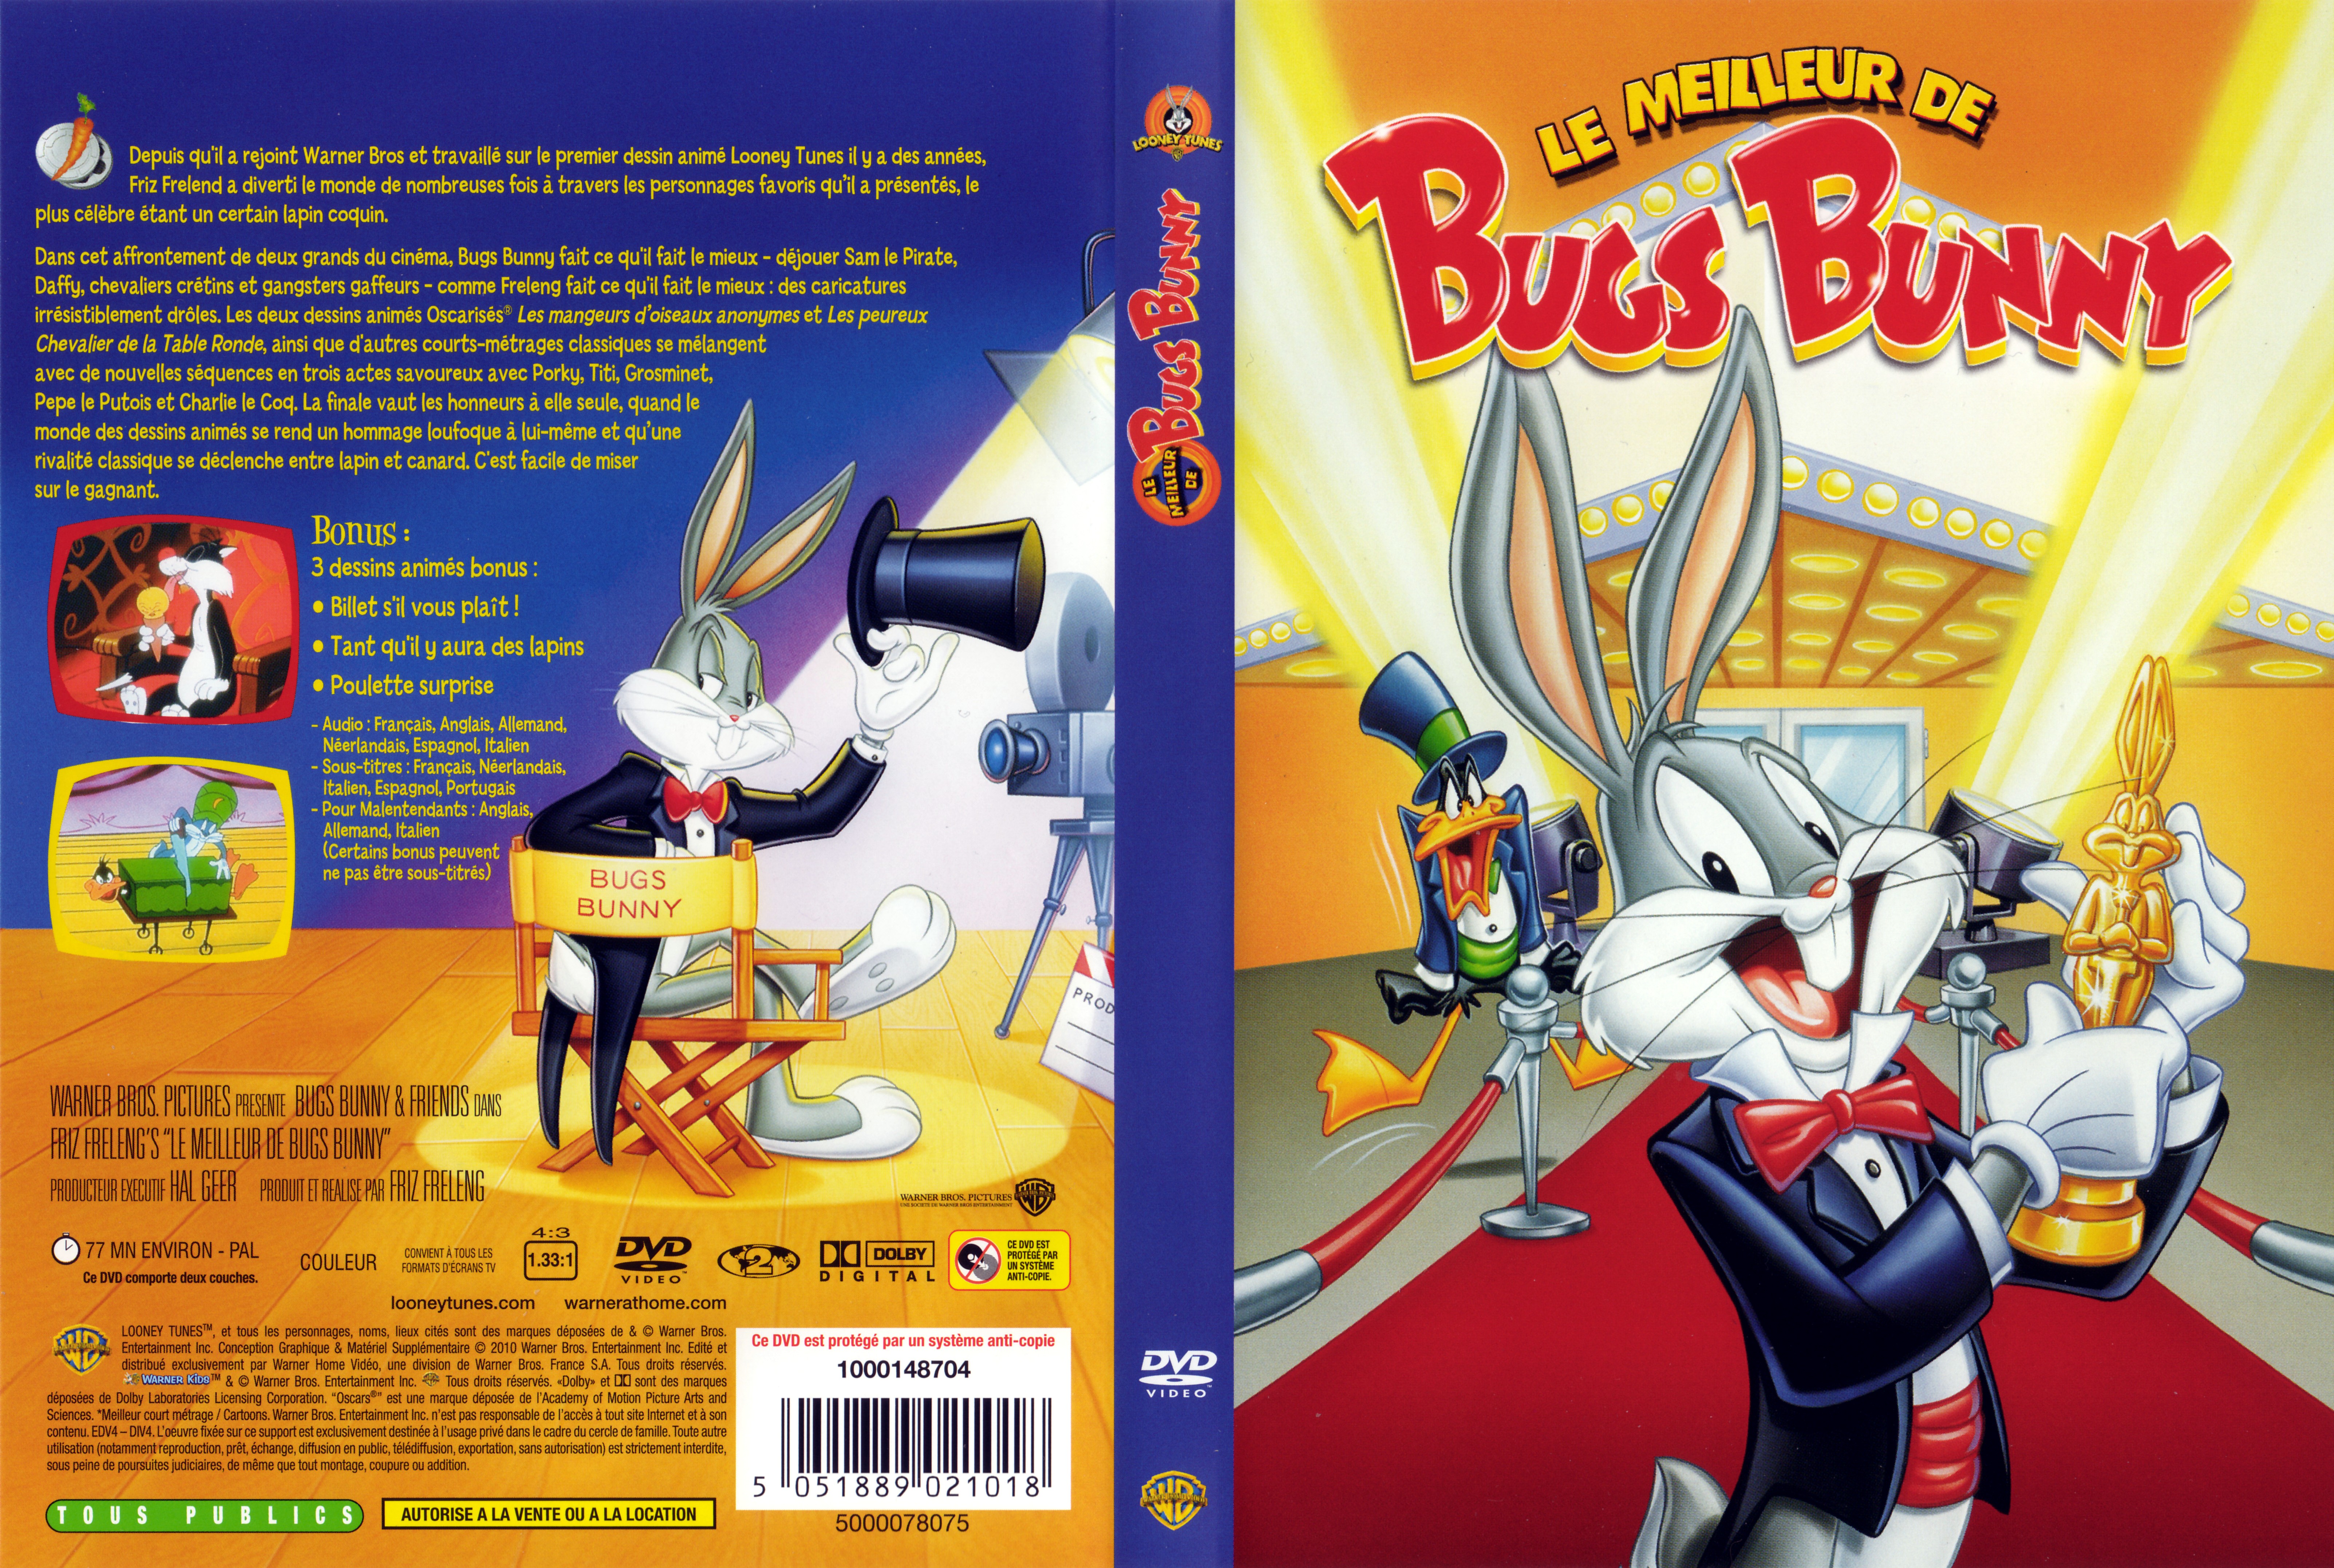 Jaquette DVD Le meilleur de Bugs Bunny